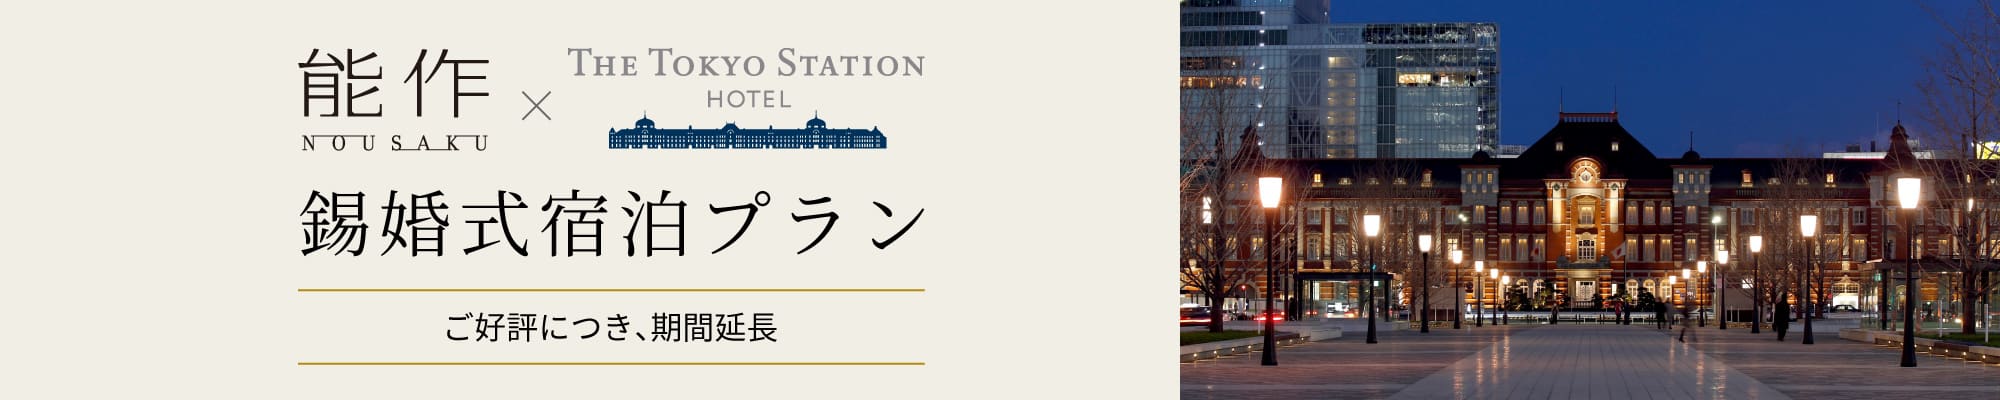 能作×東京ステーションホテル期間限定 錫婚式宿泊プラン 